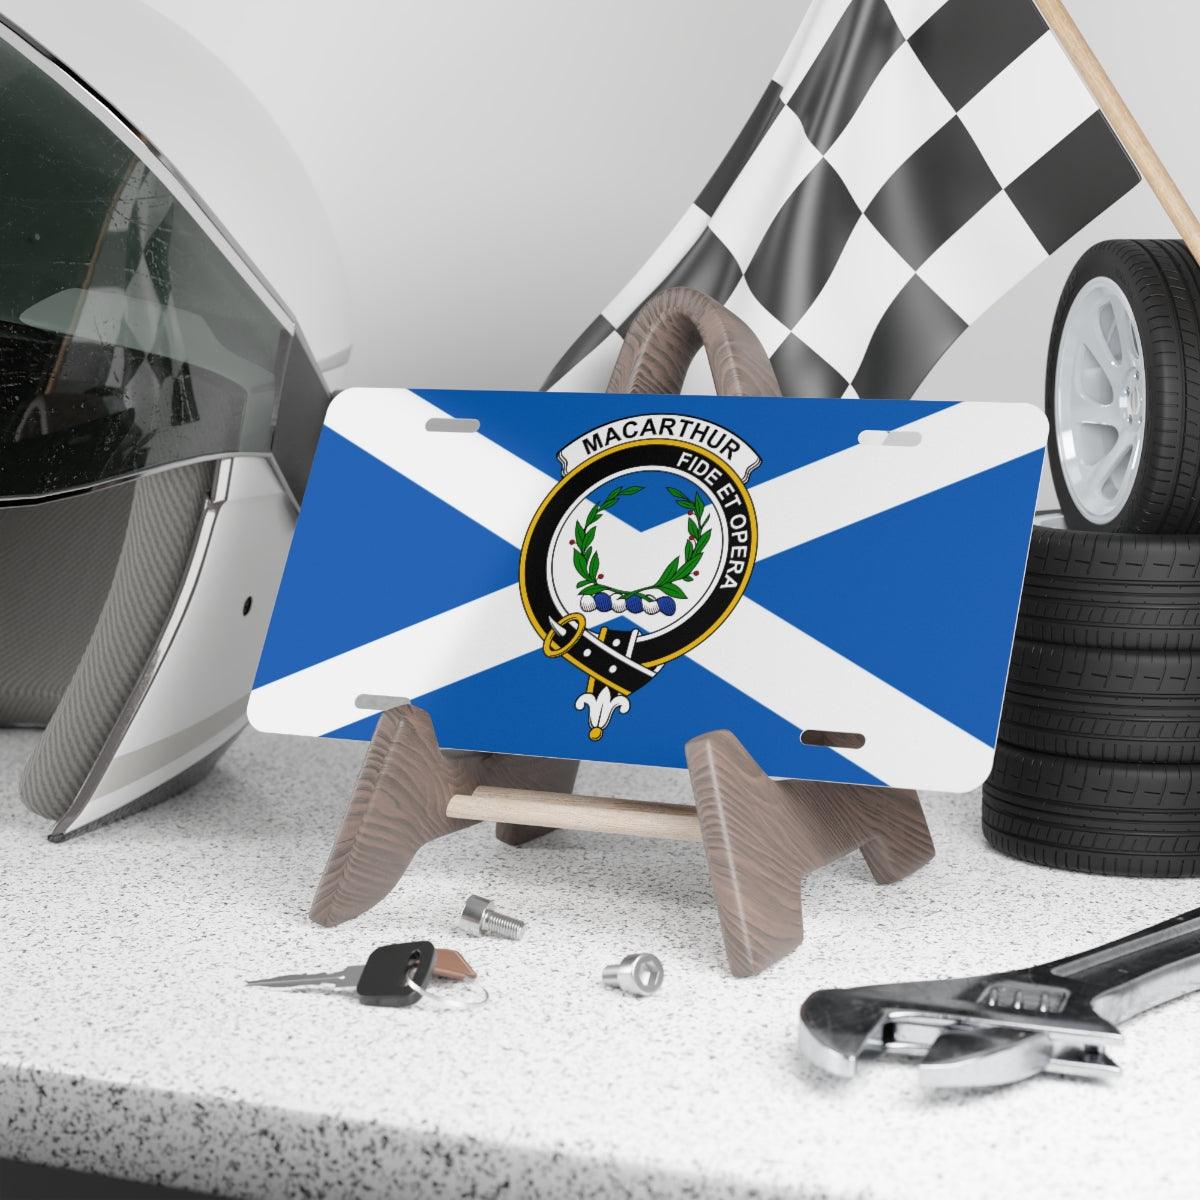 Clan MacArthur Crest Scottish Novelty License Plate, Scottish Flag License Plate